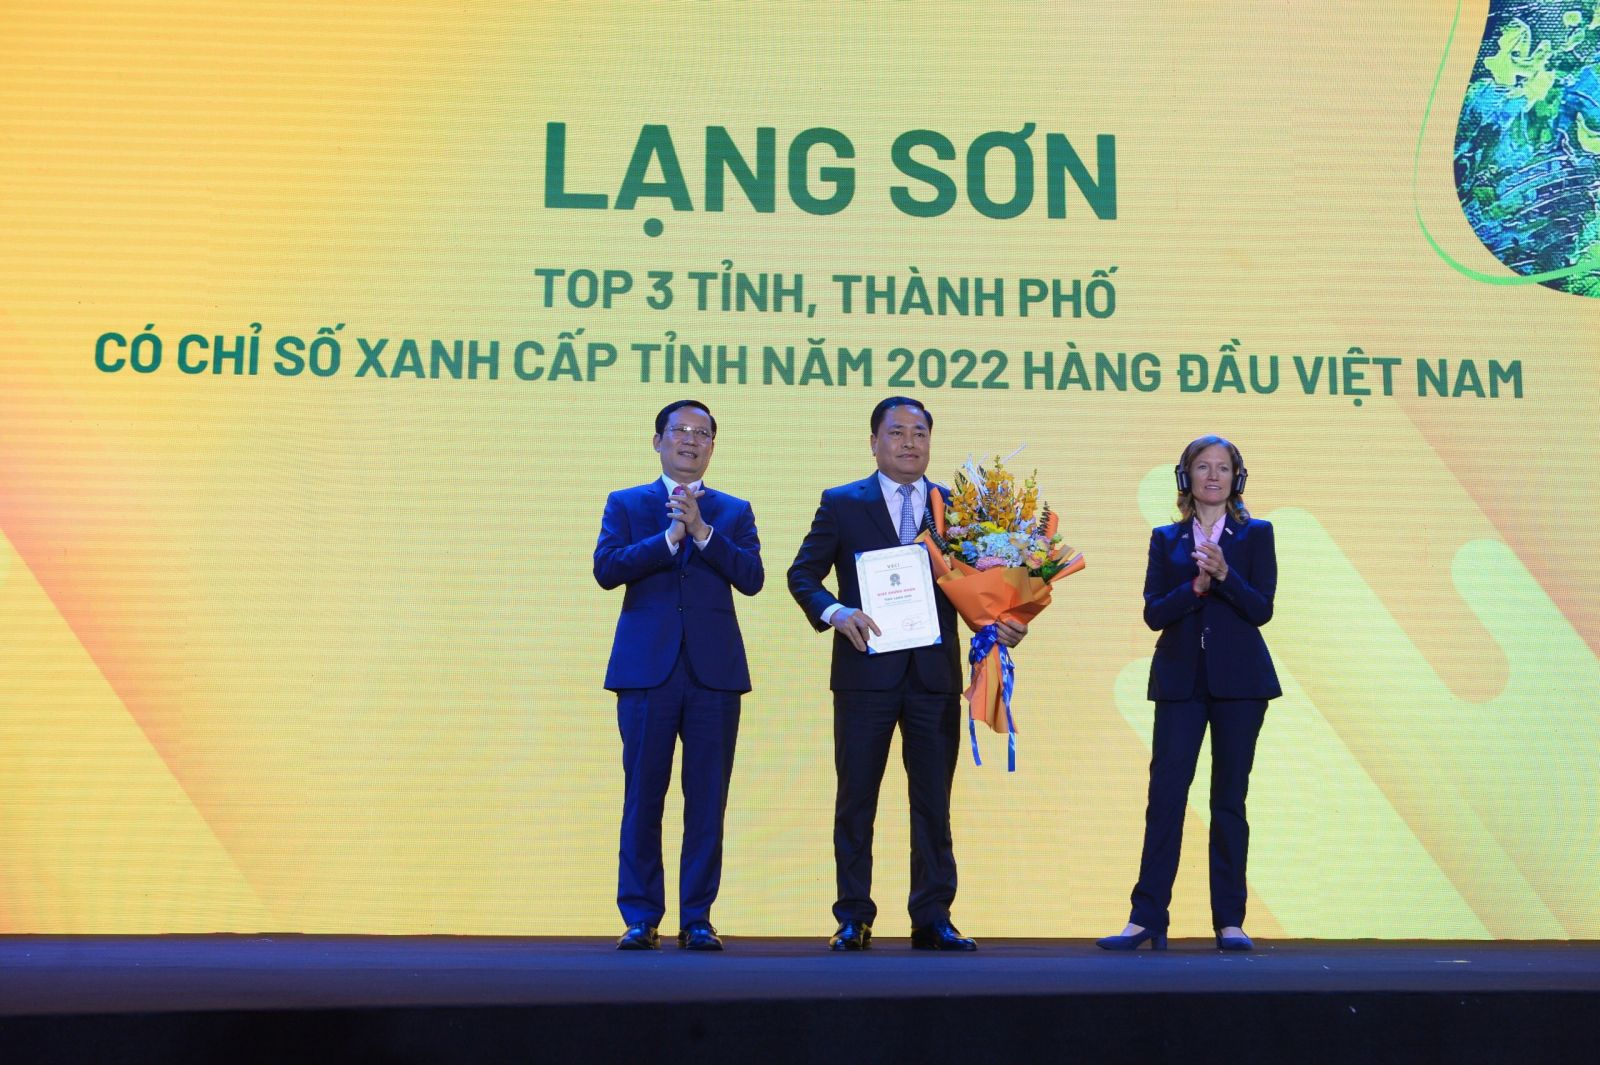 Lạng Sơn lọt TOP 30 tỉnh, thành phố có điểm PCI 2022 hàng đầu Việt Nam